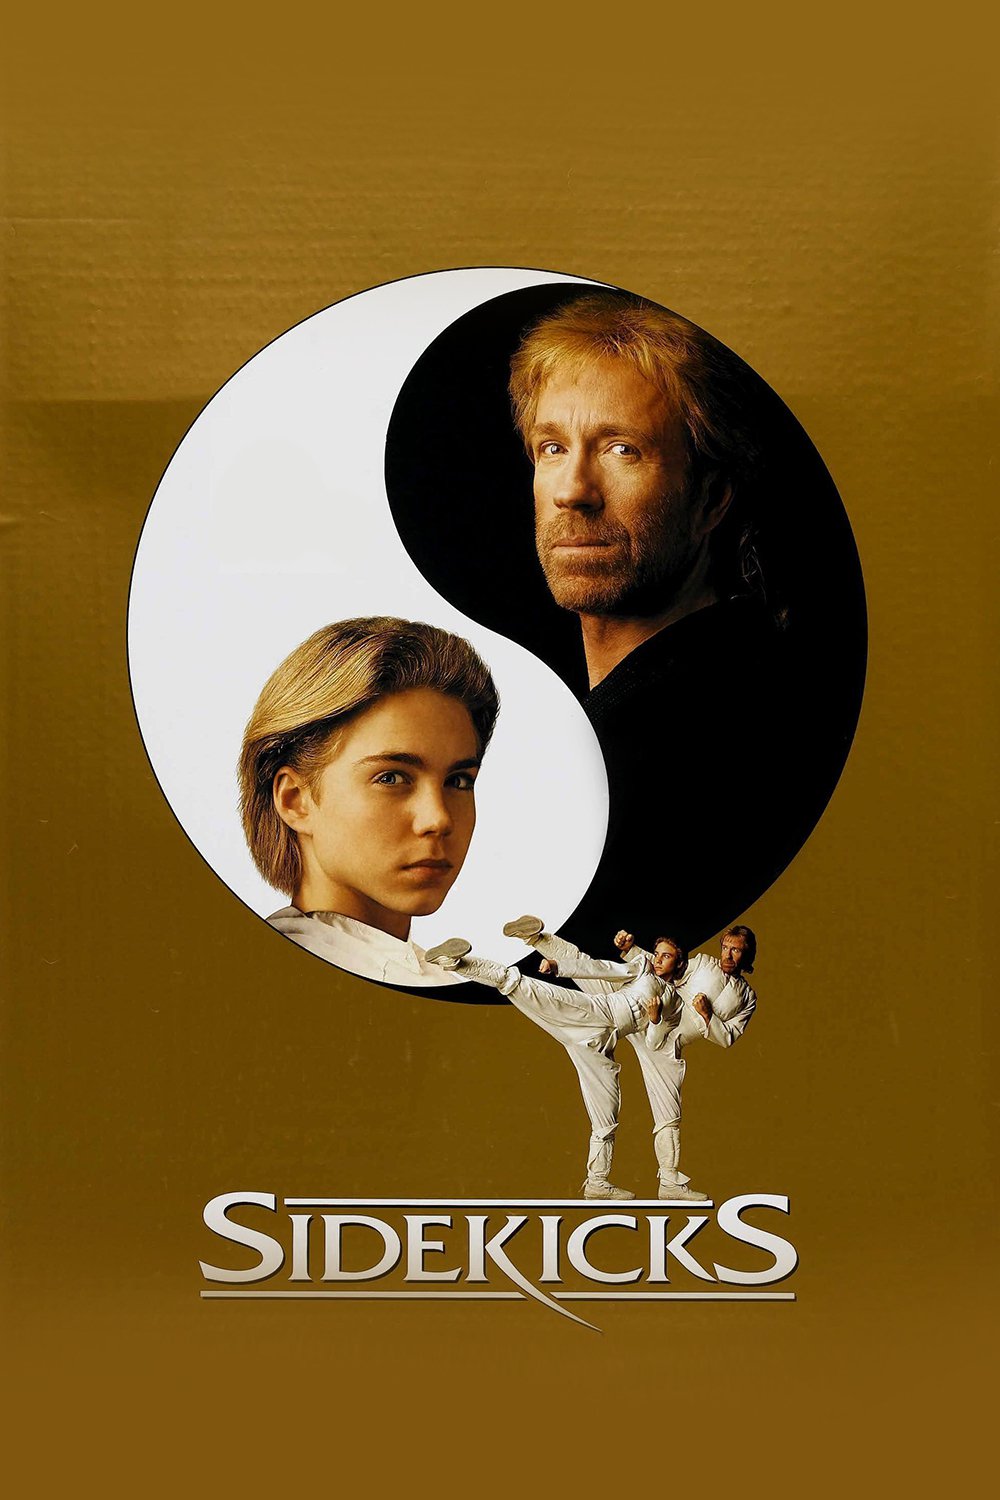 Plakat von "Sidekicks"